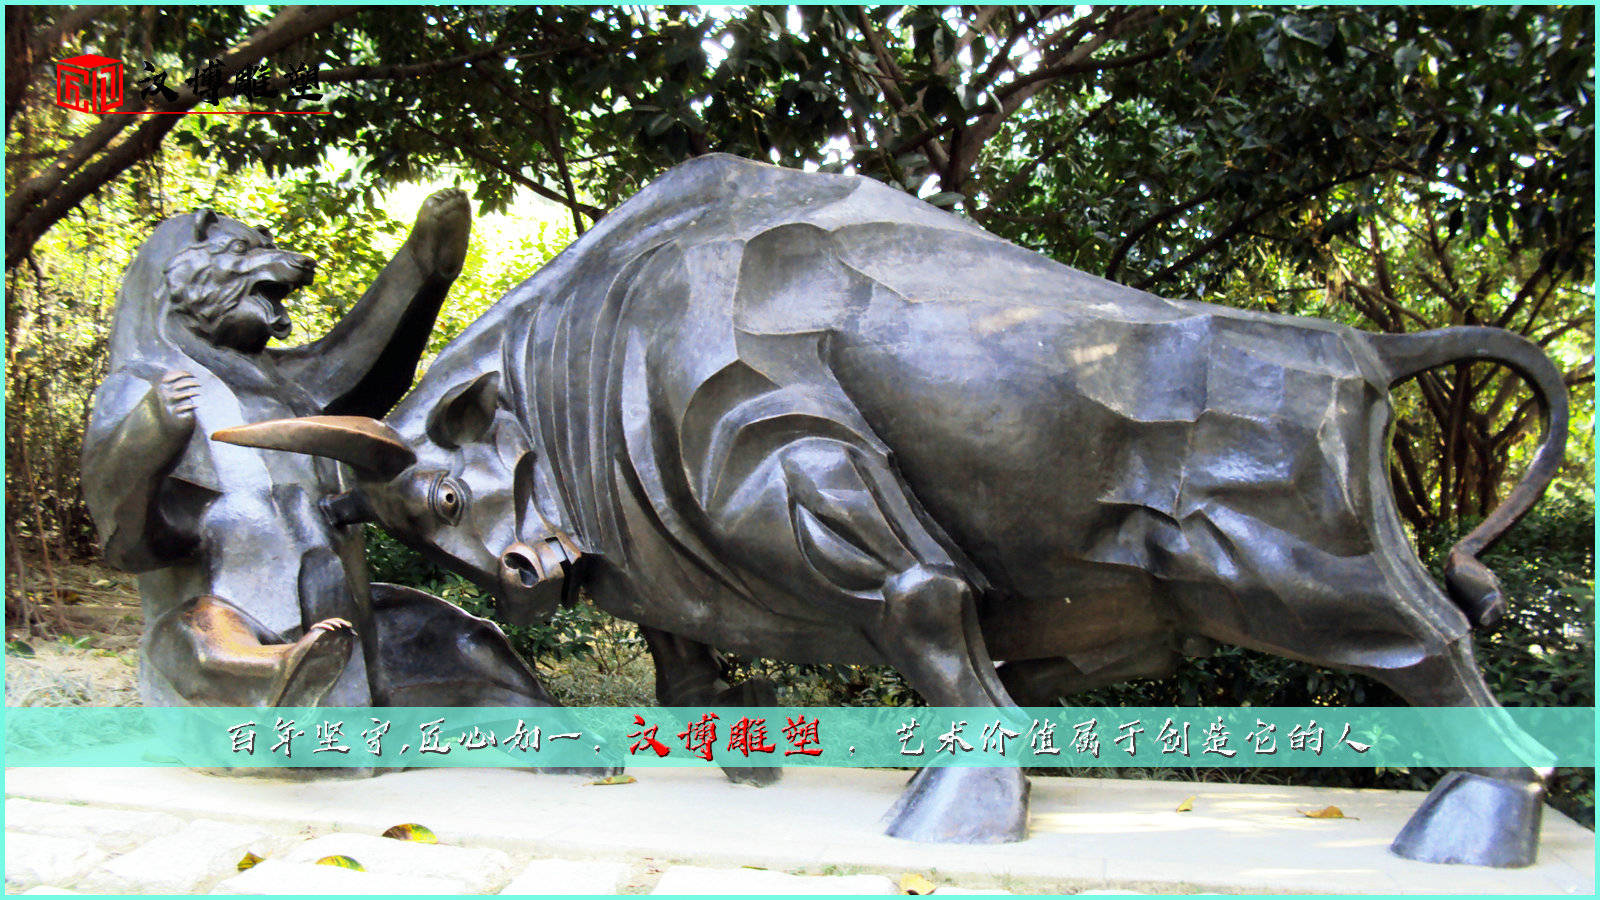 牛打斗铜雕,动物主题雕像,铸铜雕塑